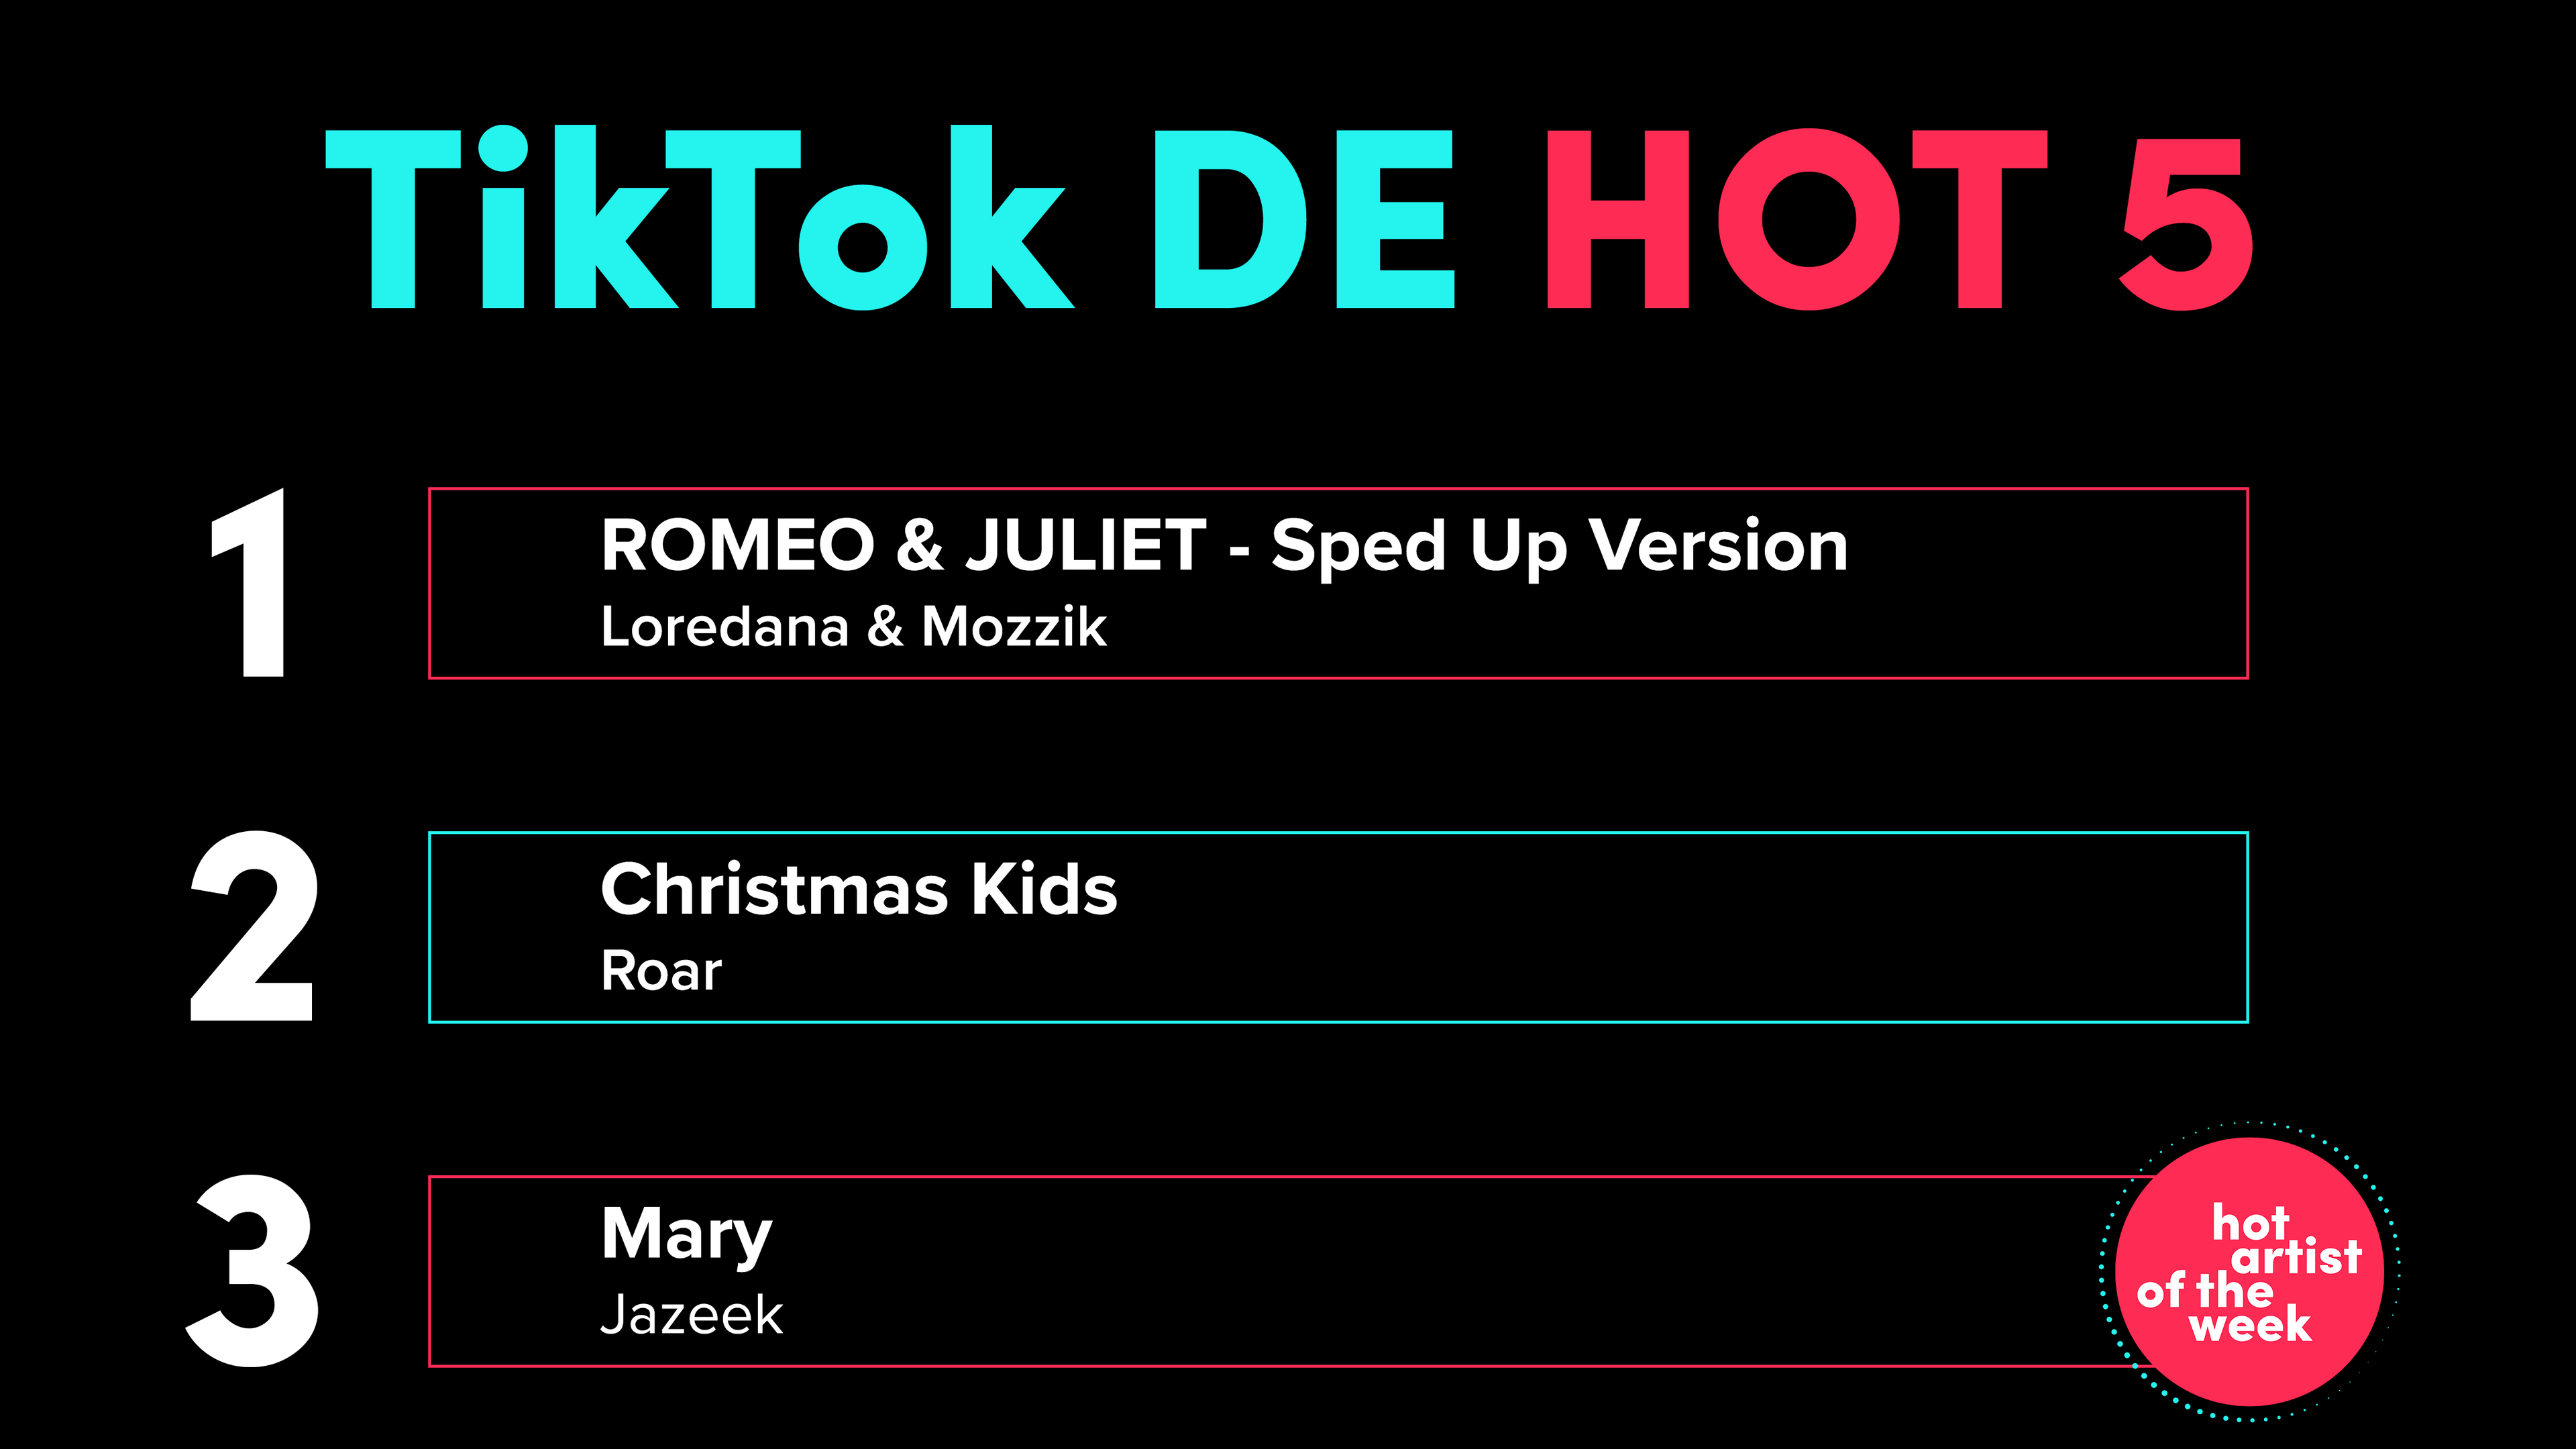 TikTok DE Hot 50 KW12: Loredana & Mozzik mit "Romeo & Juliet - Sped Up Version" ganz vorne